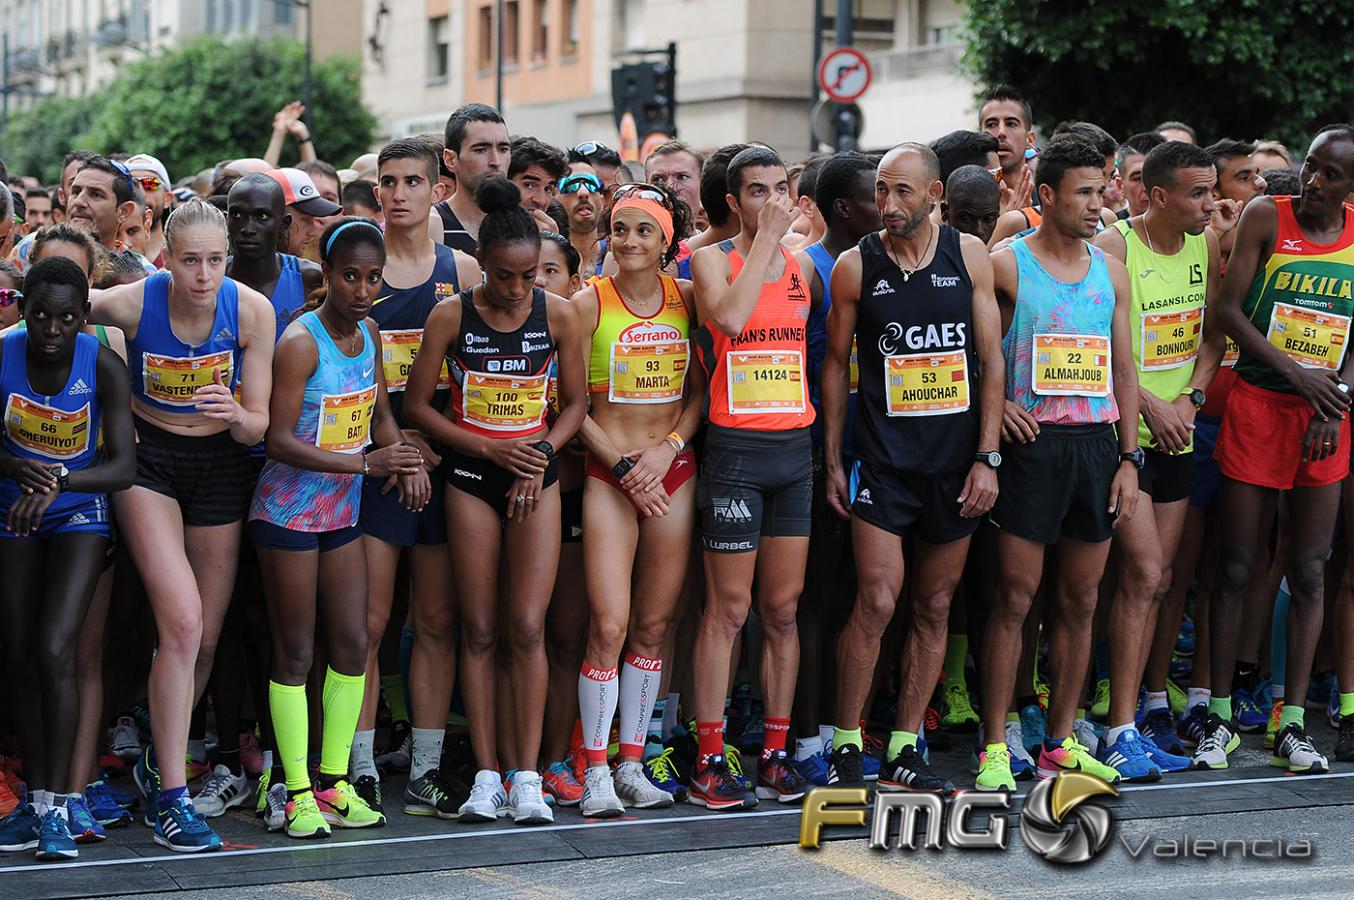 medio-maraton-valencia-2017-fmgvalencia-fili-navarrete (5)